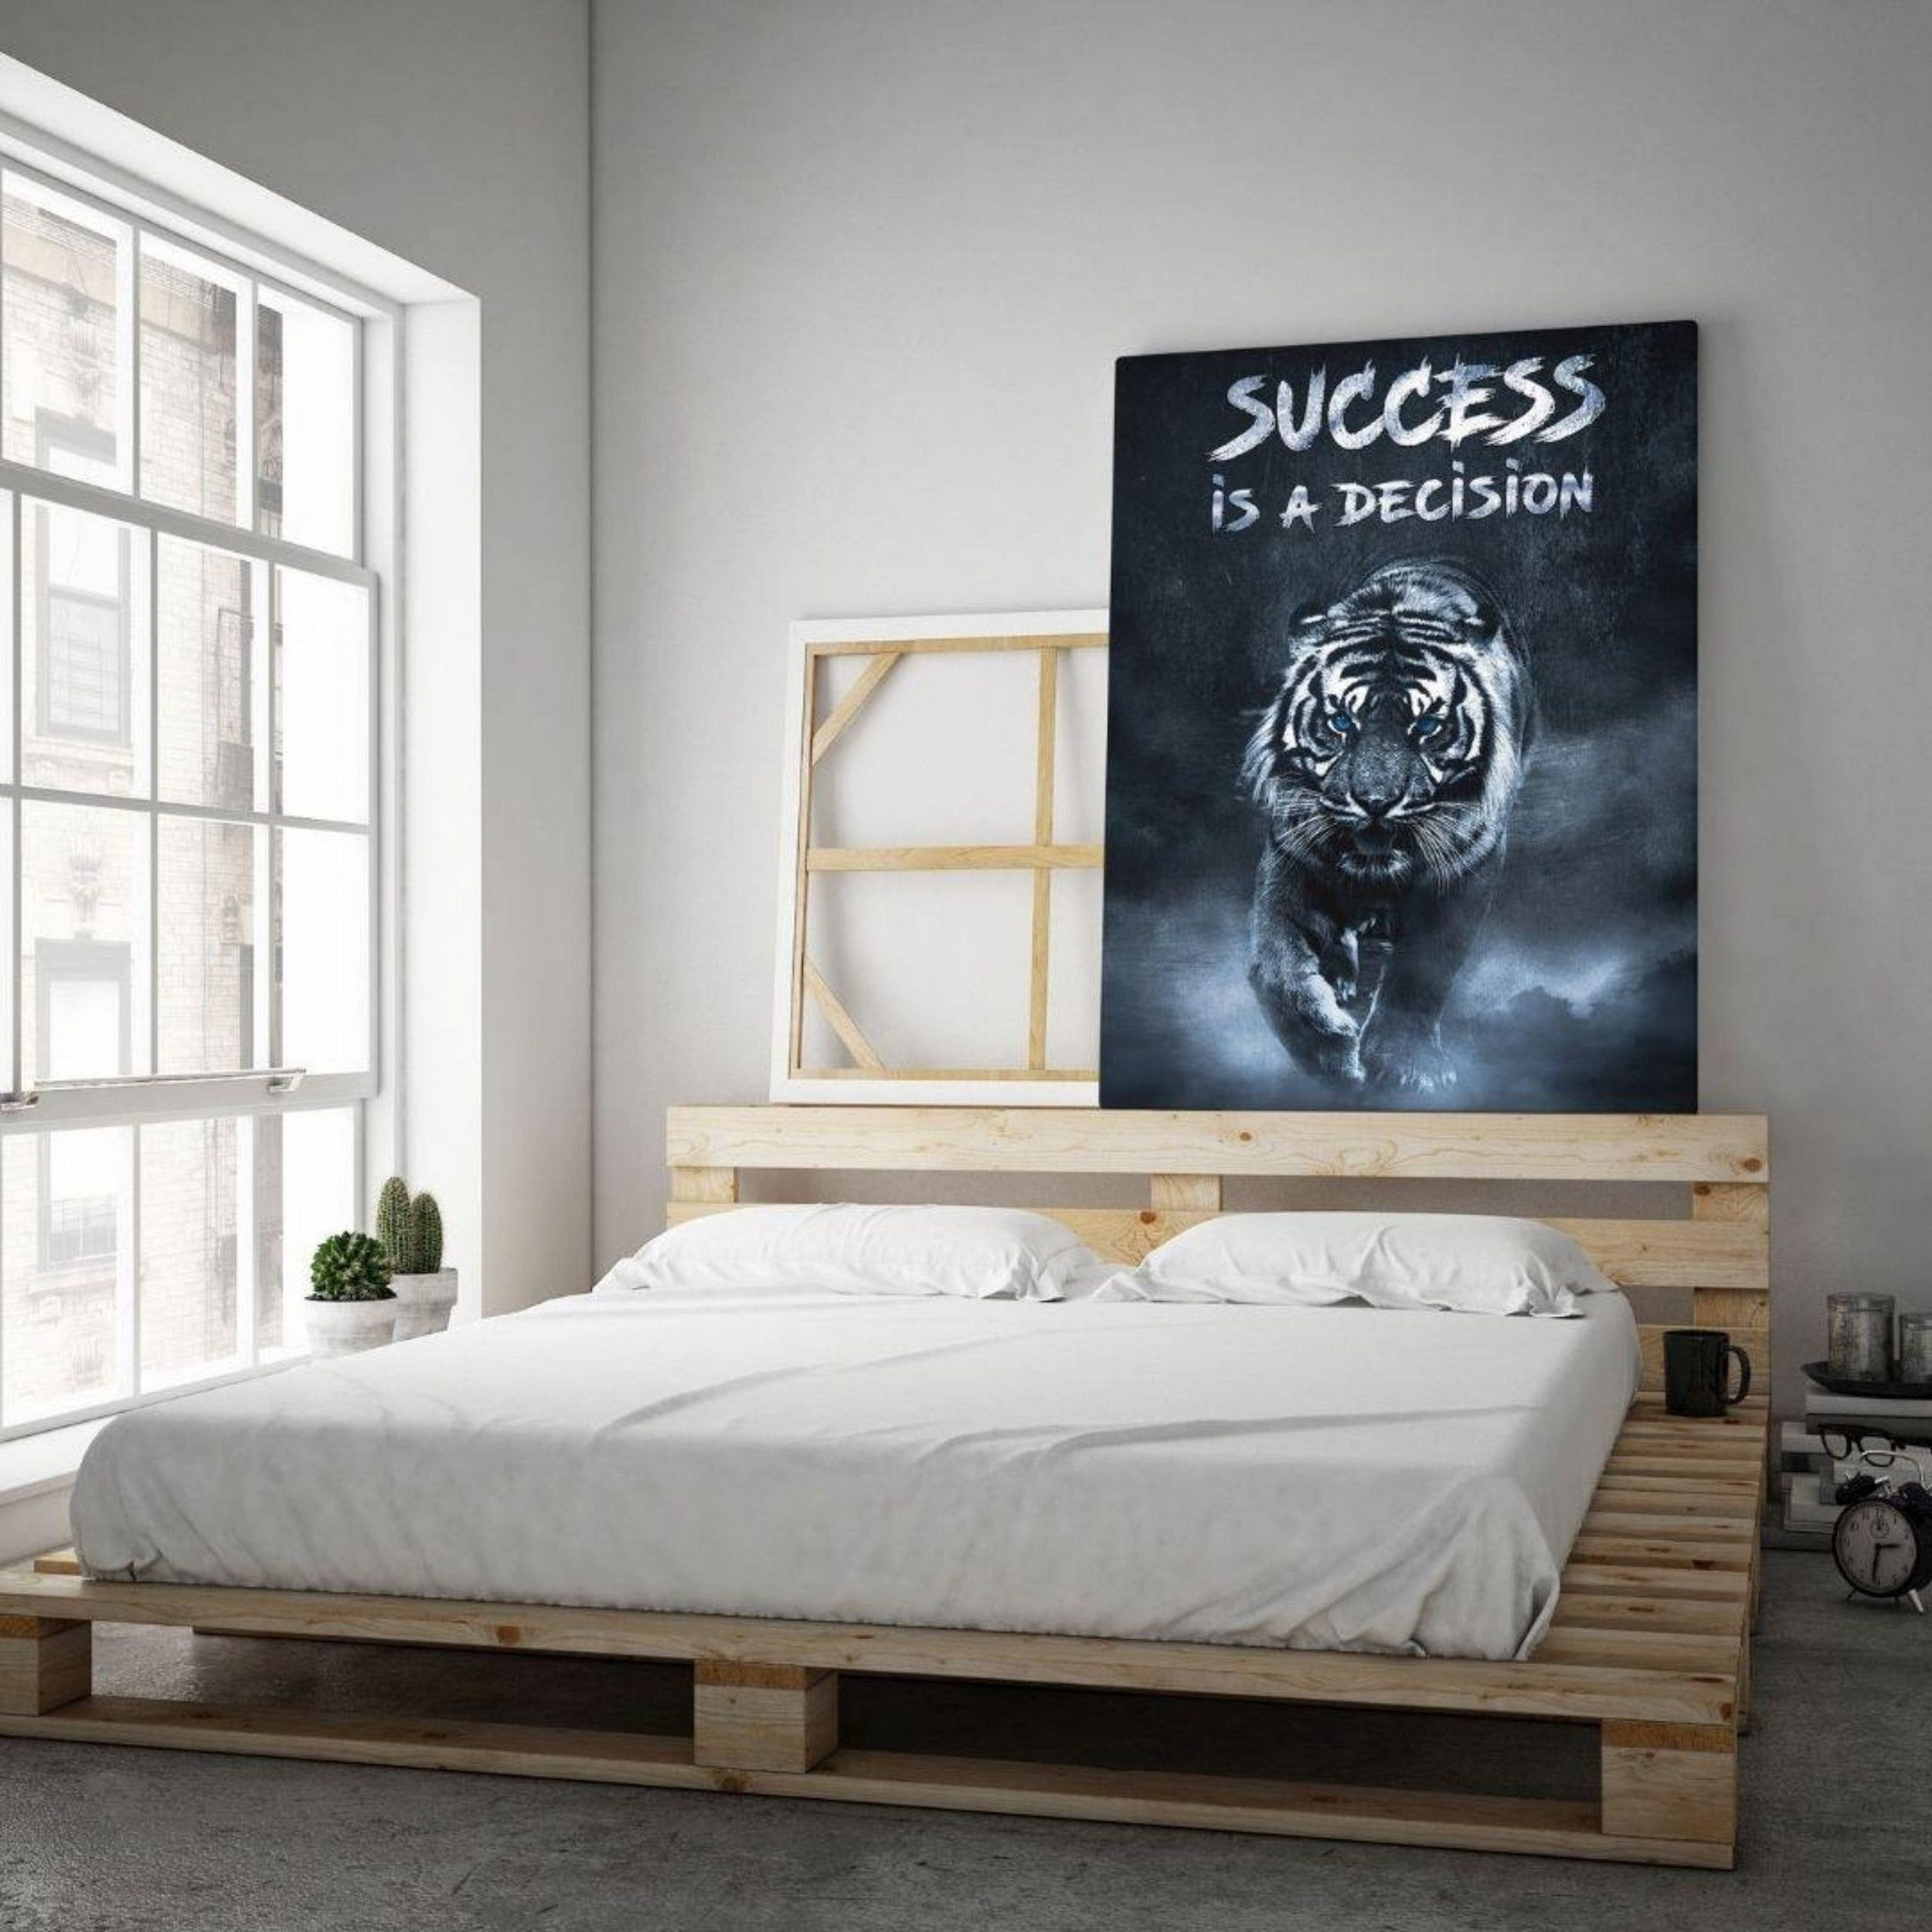 is Größen a in decision", Sharks Leinwandbild 7 unterschiedlichen verfügbar für "Success Leinwandbild Hustling Motivationsbild als Erfolg